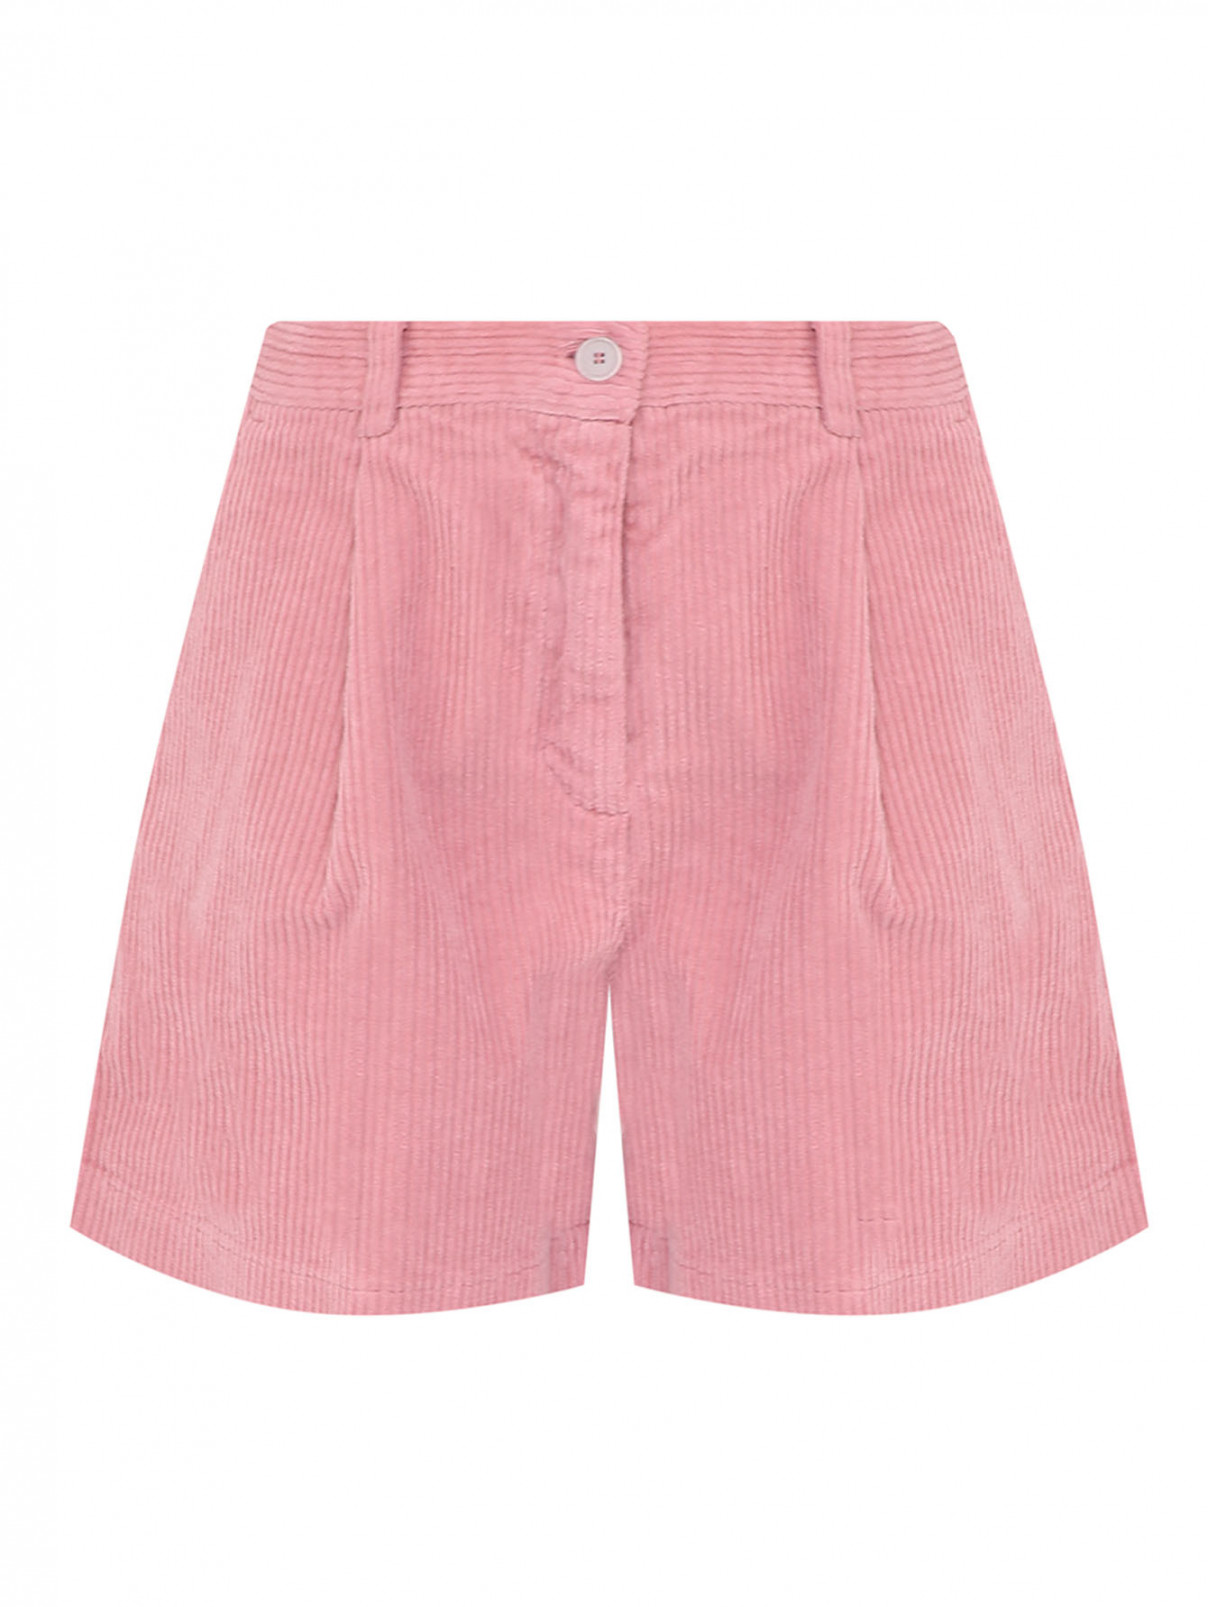 Шорты из хлопка с карманами Aspesi  –  Общий вид  – Цвет:  Розовый